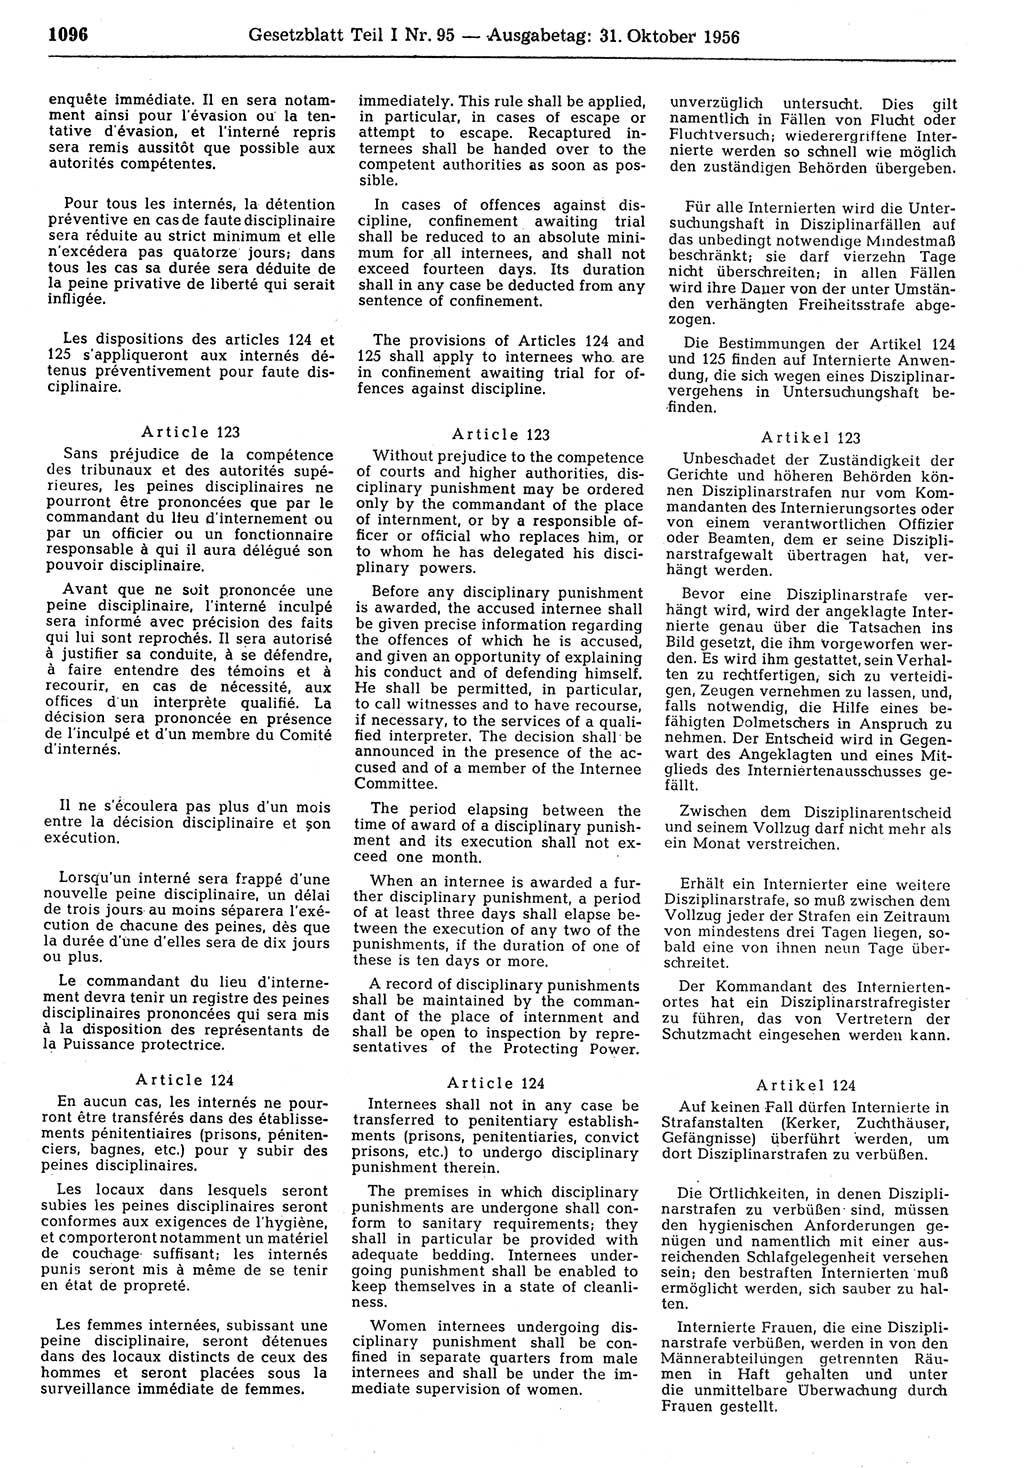 Gesetzblatt (GBl.) der Deutschen Demokratischen Republik (DDR) Teil Ⅰ 1956, Seite 1096 (GBl. DDR Ⅰ 1956, S. 1096)